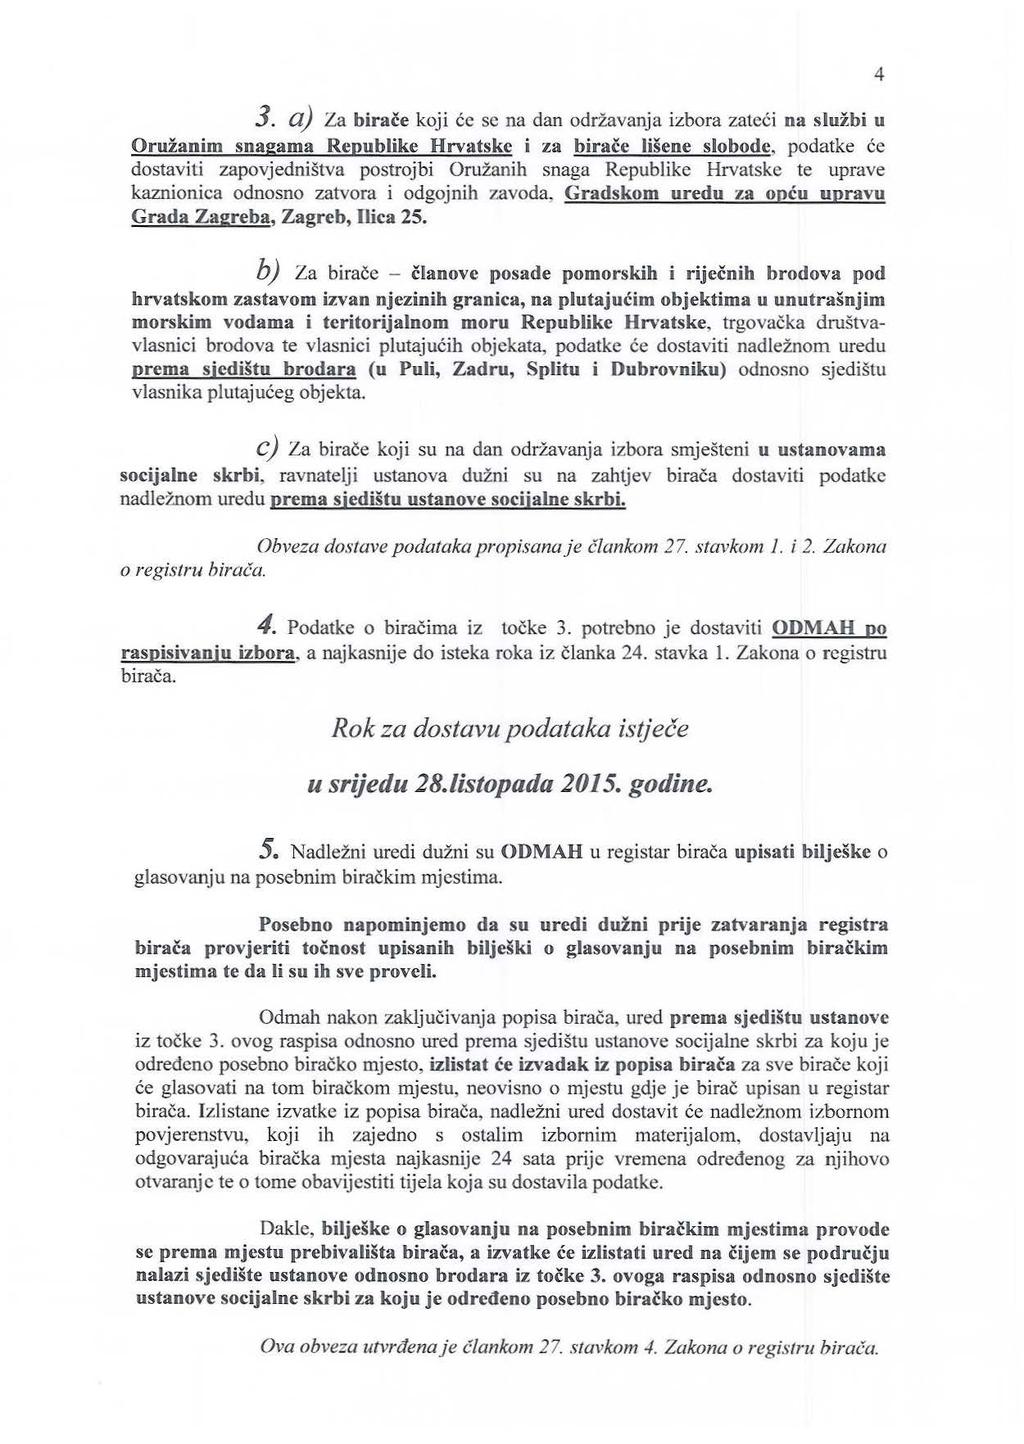 3. a) Za birace koji cc se na dan odriavanja izbora zateci na sluzbi u OrllZanim snagama Republike Hrvatskc i za birace lisene slobode, podatke ce dostaviti zapovjednistva postrojbi Oruianih snaga